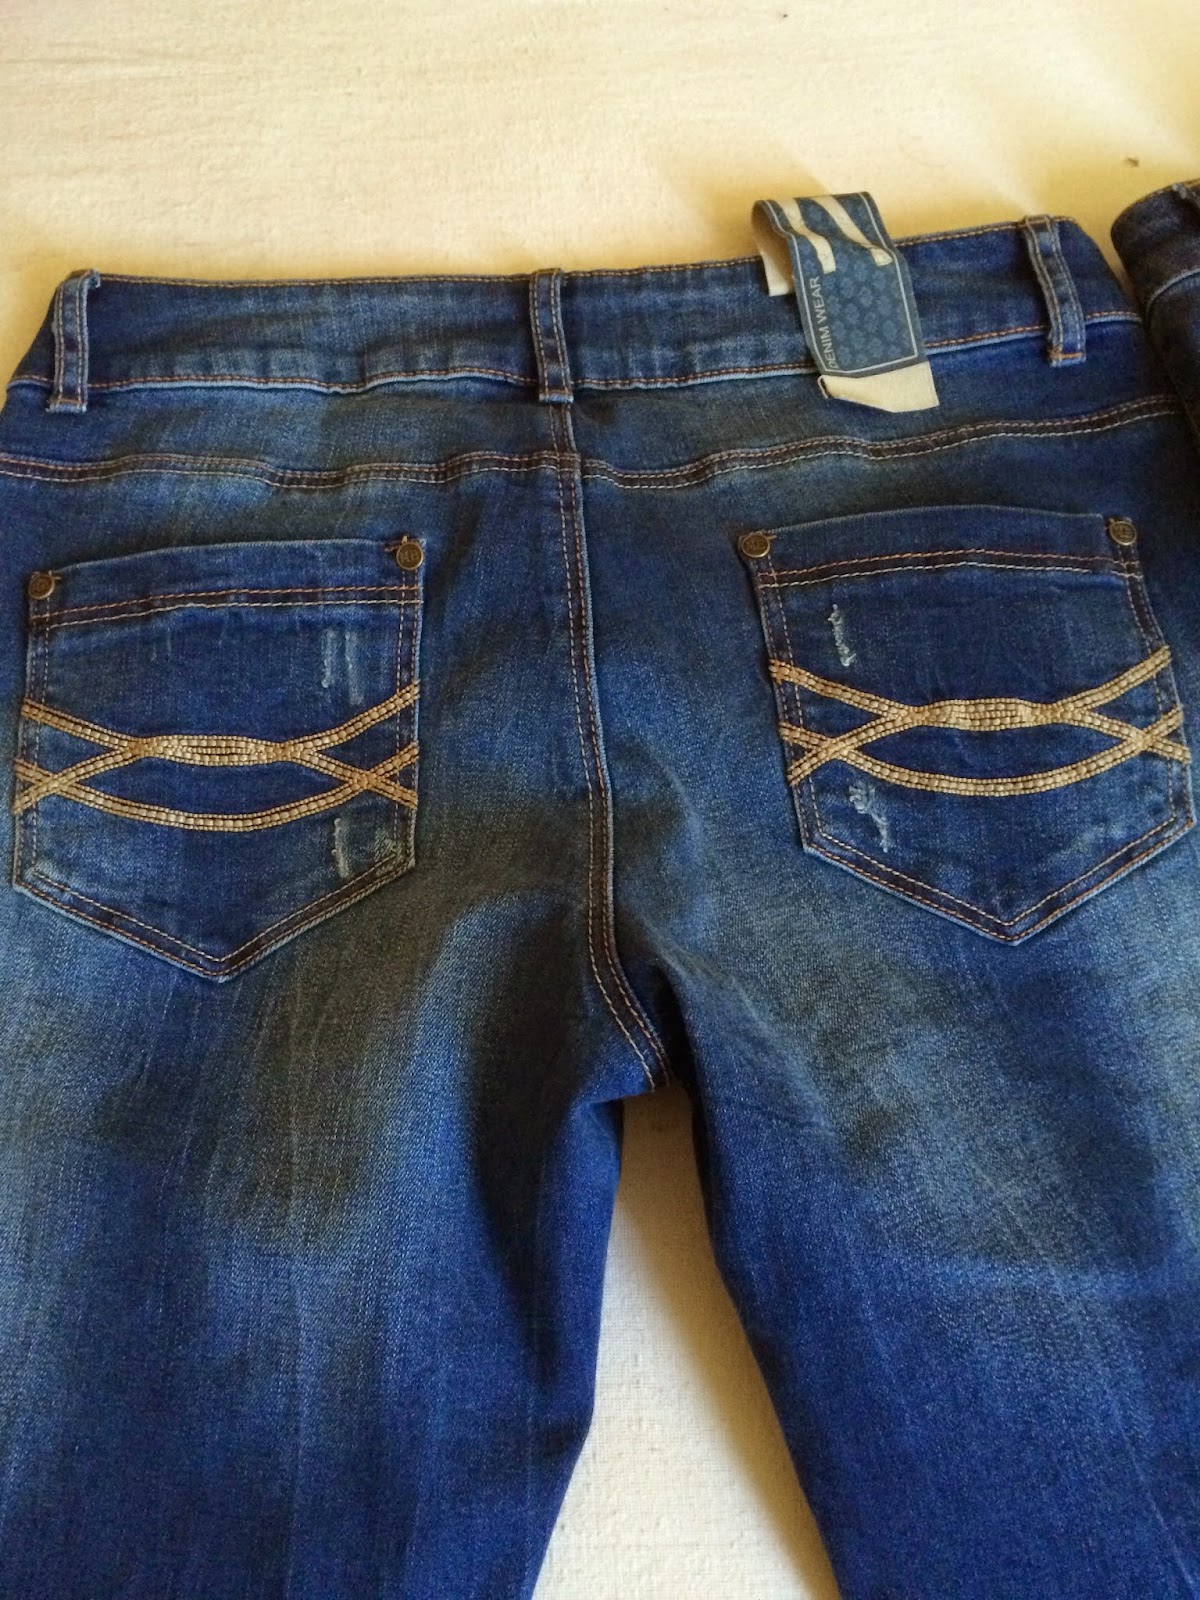 *Werbung* Shoptest Jeans Fritz 24